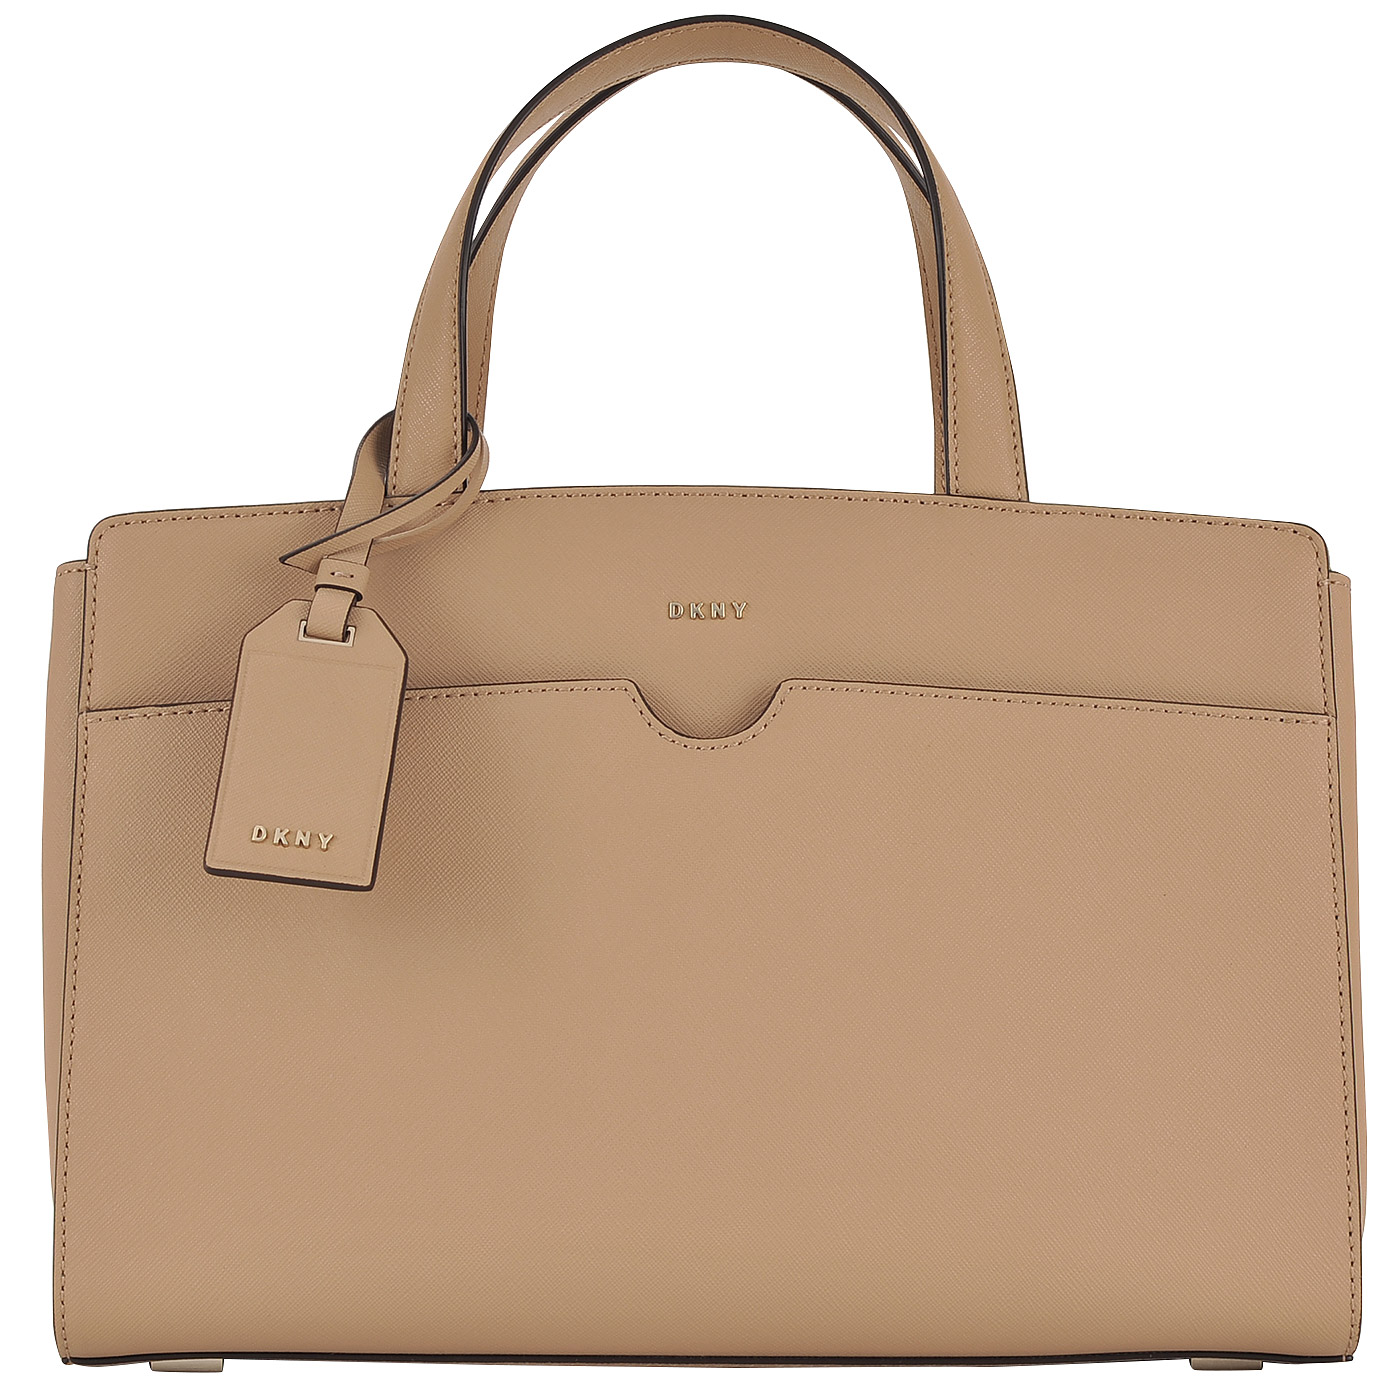 Женская сумка из сафьяновой бежевой кожи с плечевым ремешком DKNY